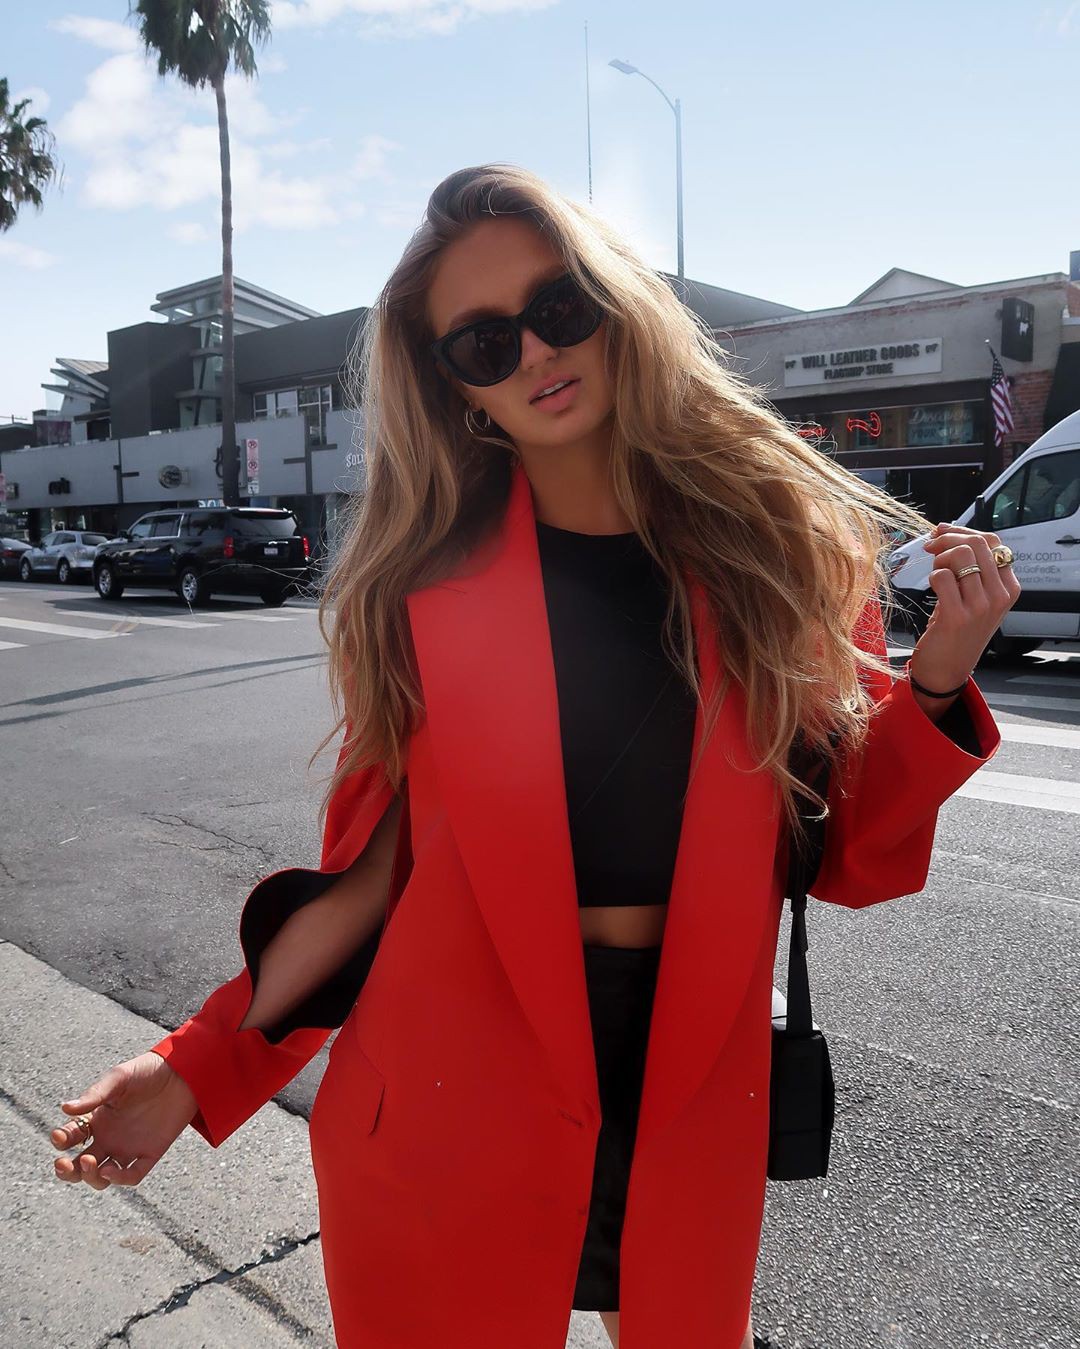 Romee Strijd blazer color outfit, debes probar, fotografía de modelo, pelos rubios: chicas de instagram  